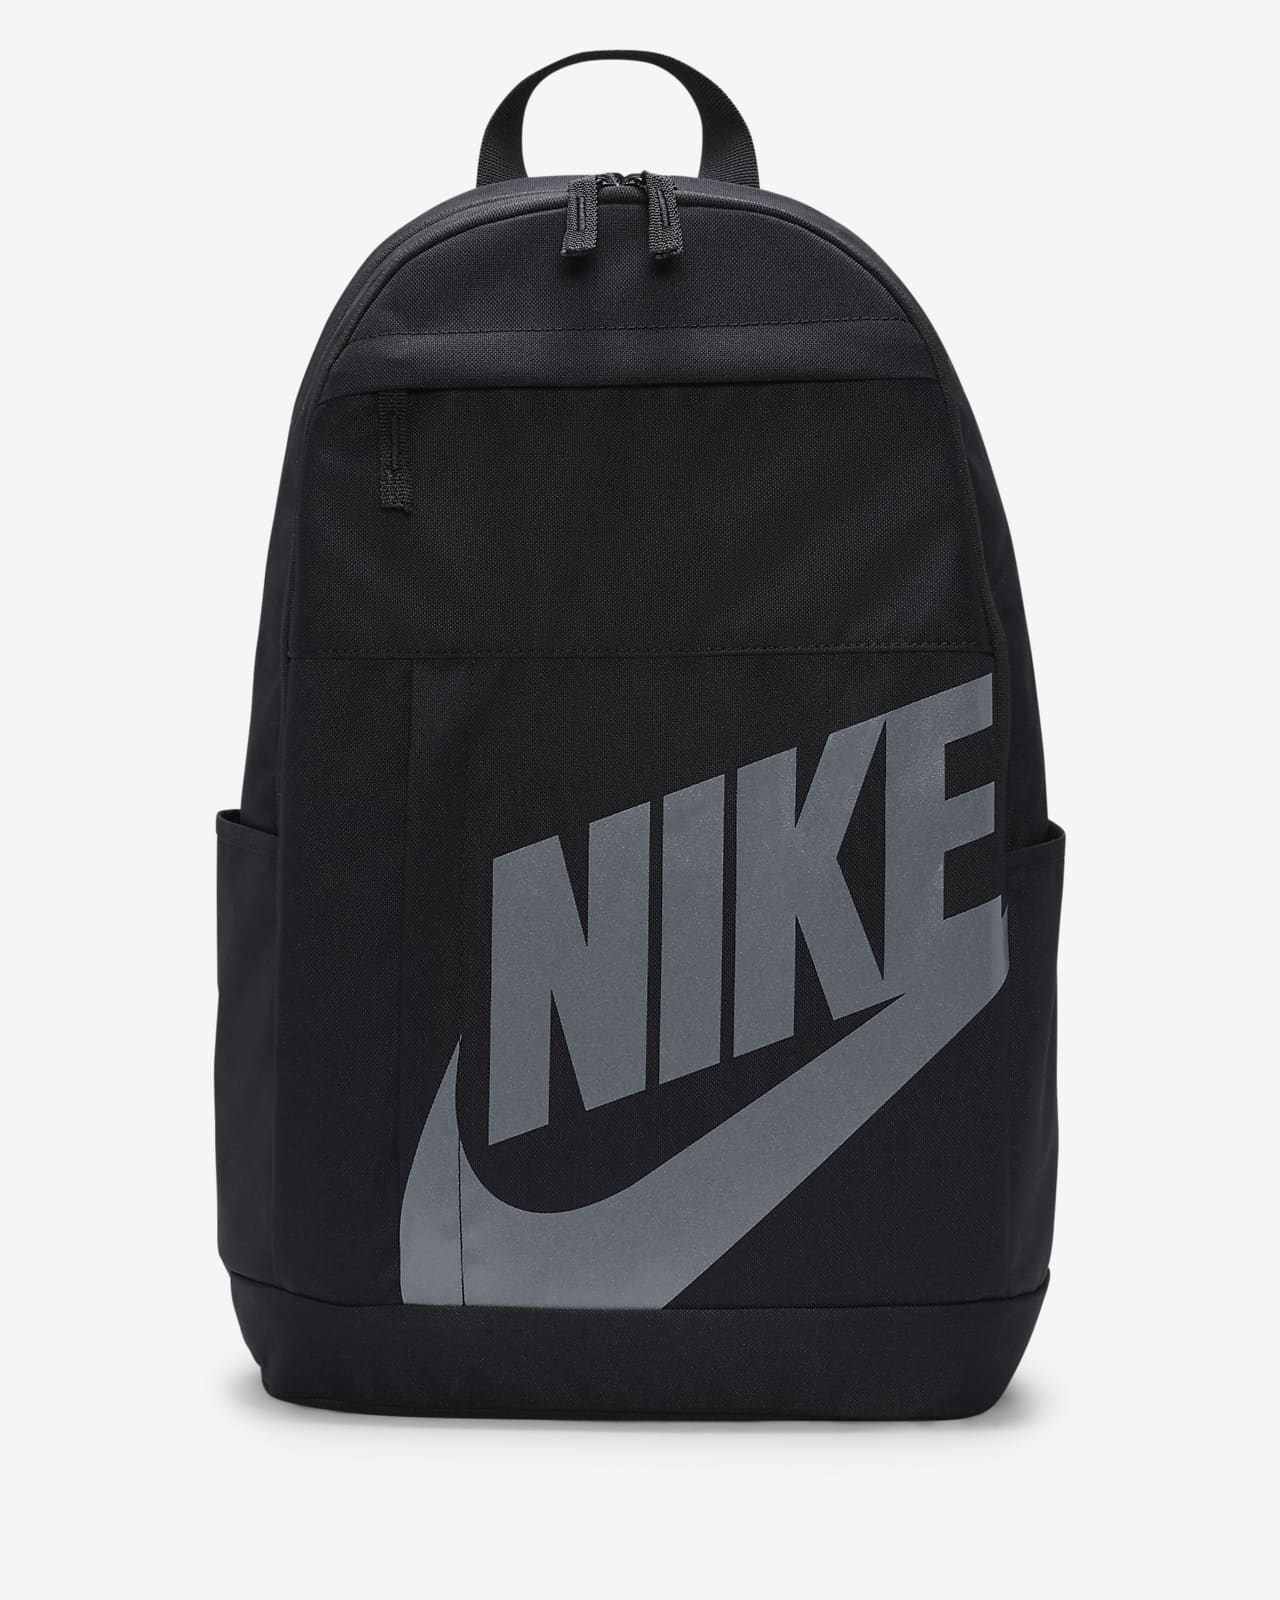 Indsprøjtning Uforudsete omstændigheder Spiritus Nike-rygsæk (21 L). Nike DK